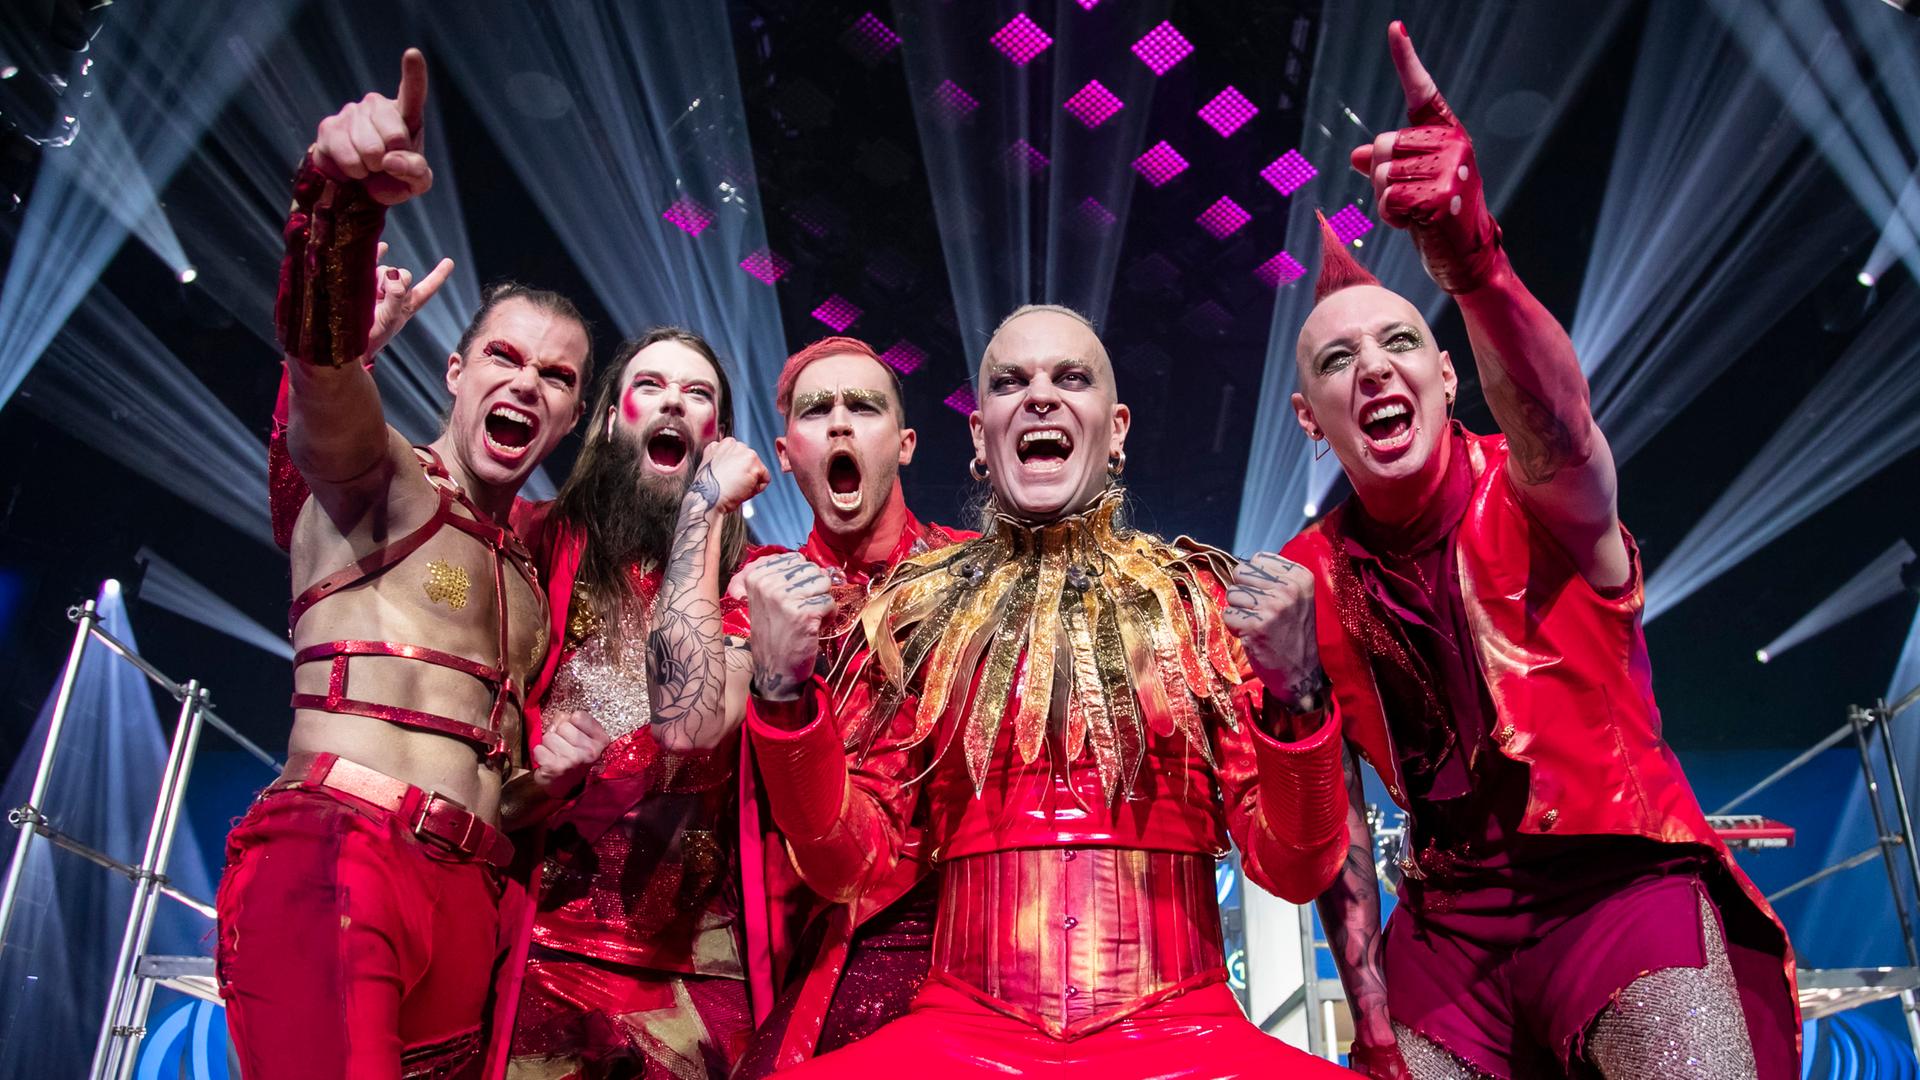 Das Foto zeigt die fünf Mitglieder der Band Lord of the Lost in roter Kleidung auf der Bühne.